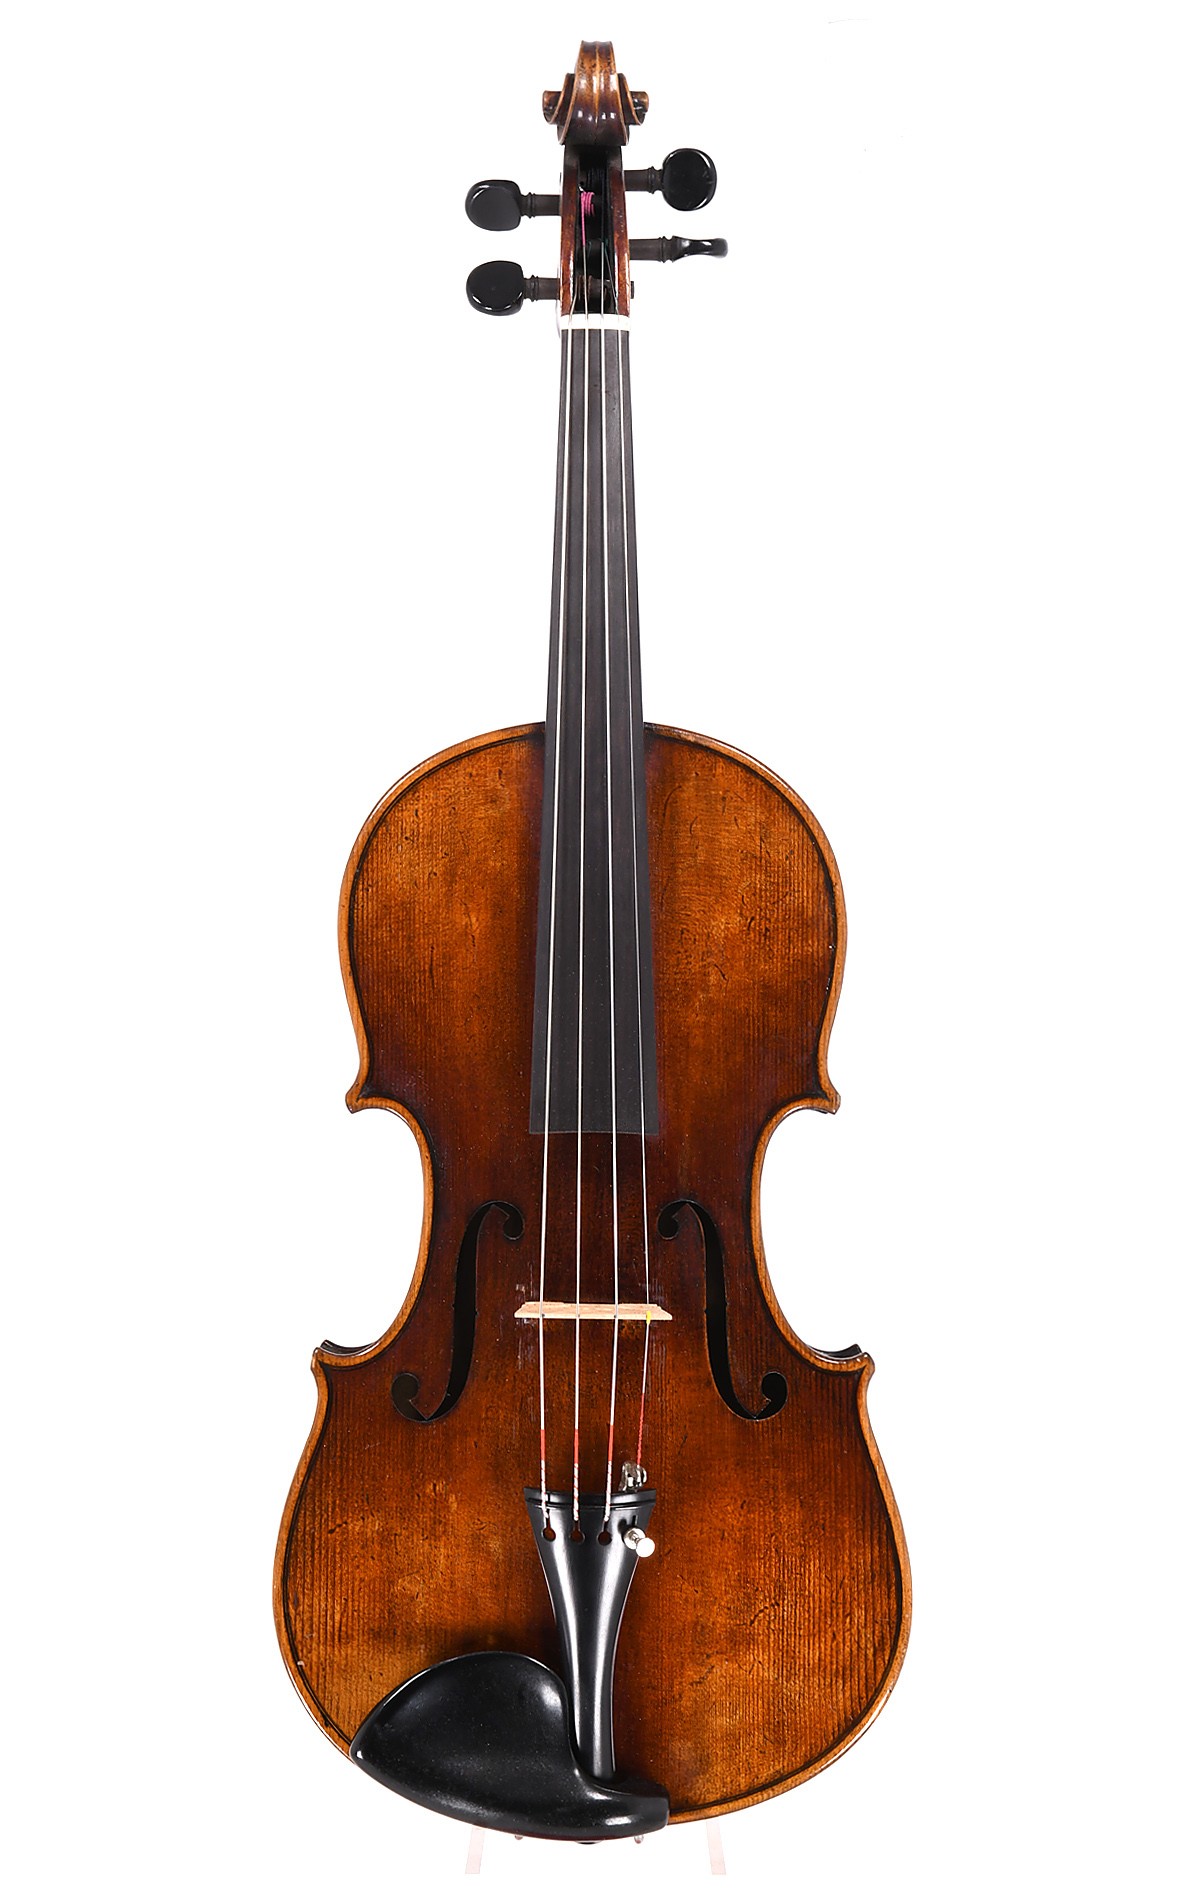 Antique German violin by Wilhelm Herwig, Markneukirchen